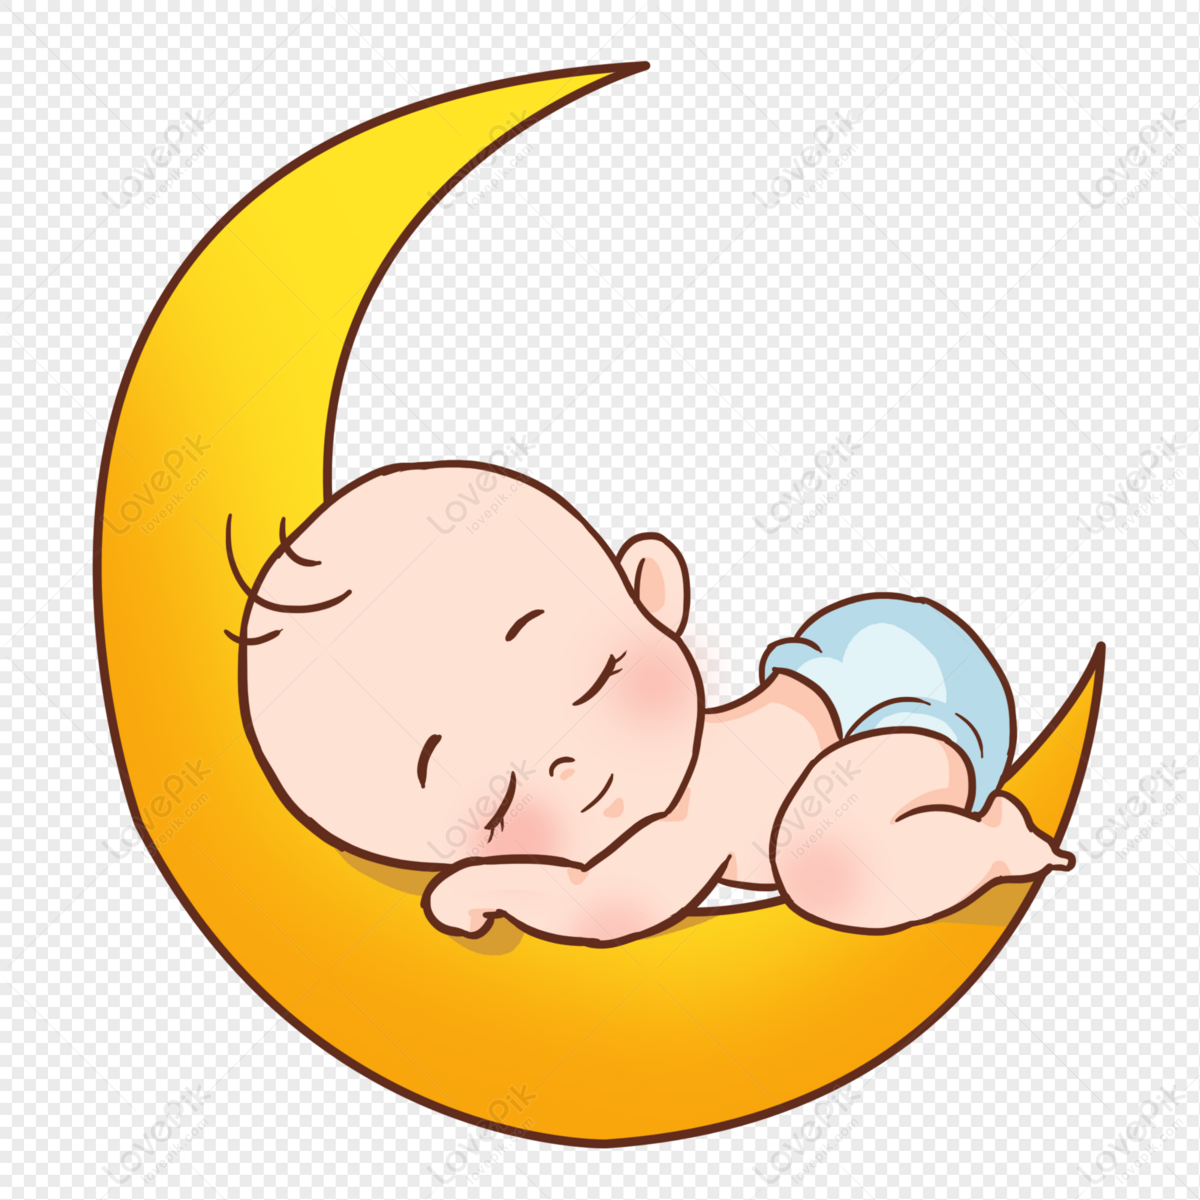 Cartoon baby sleeping moon, child, cartoon sleeping, sleep png hd transparent image